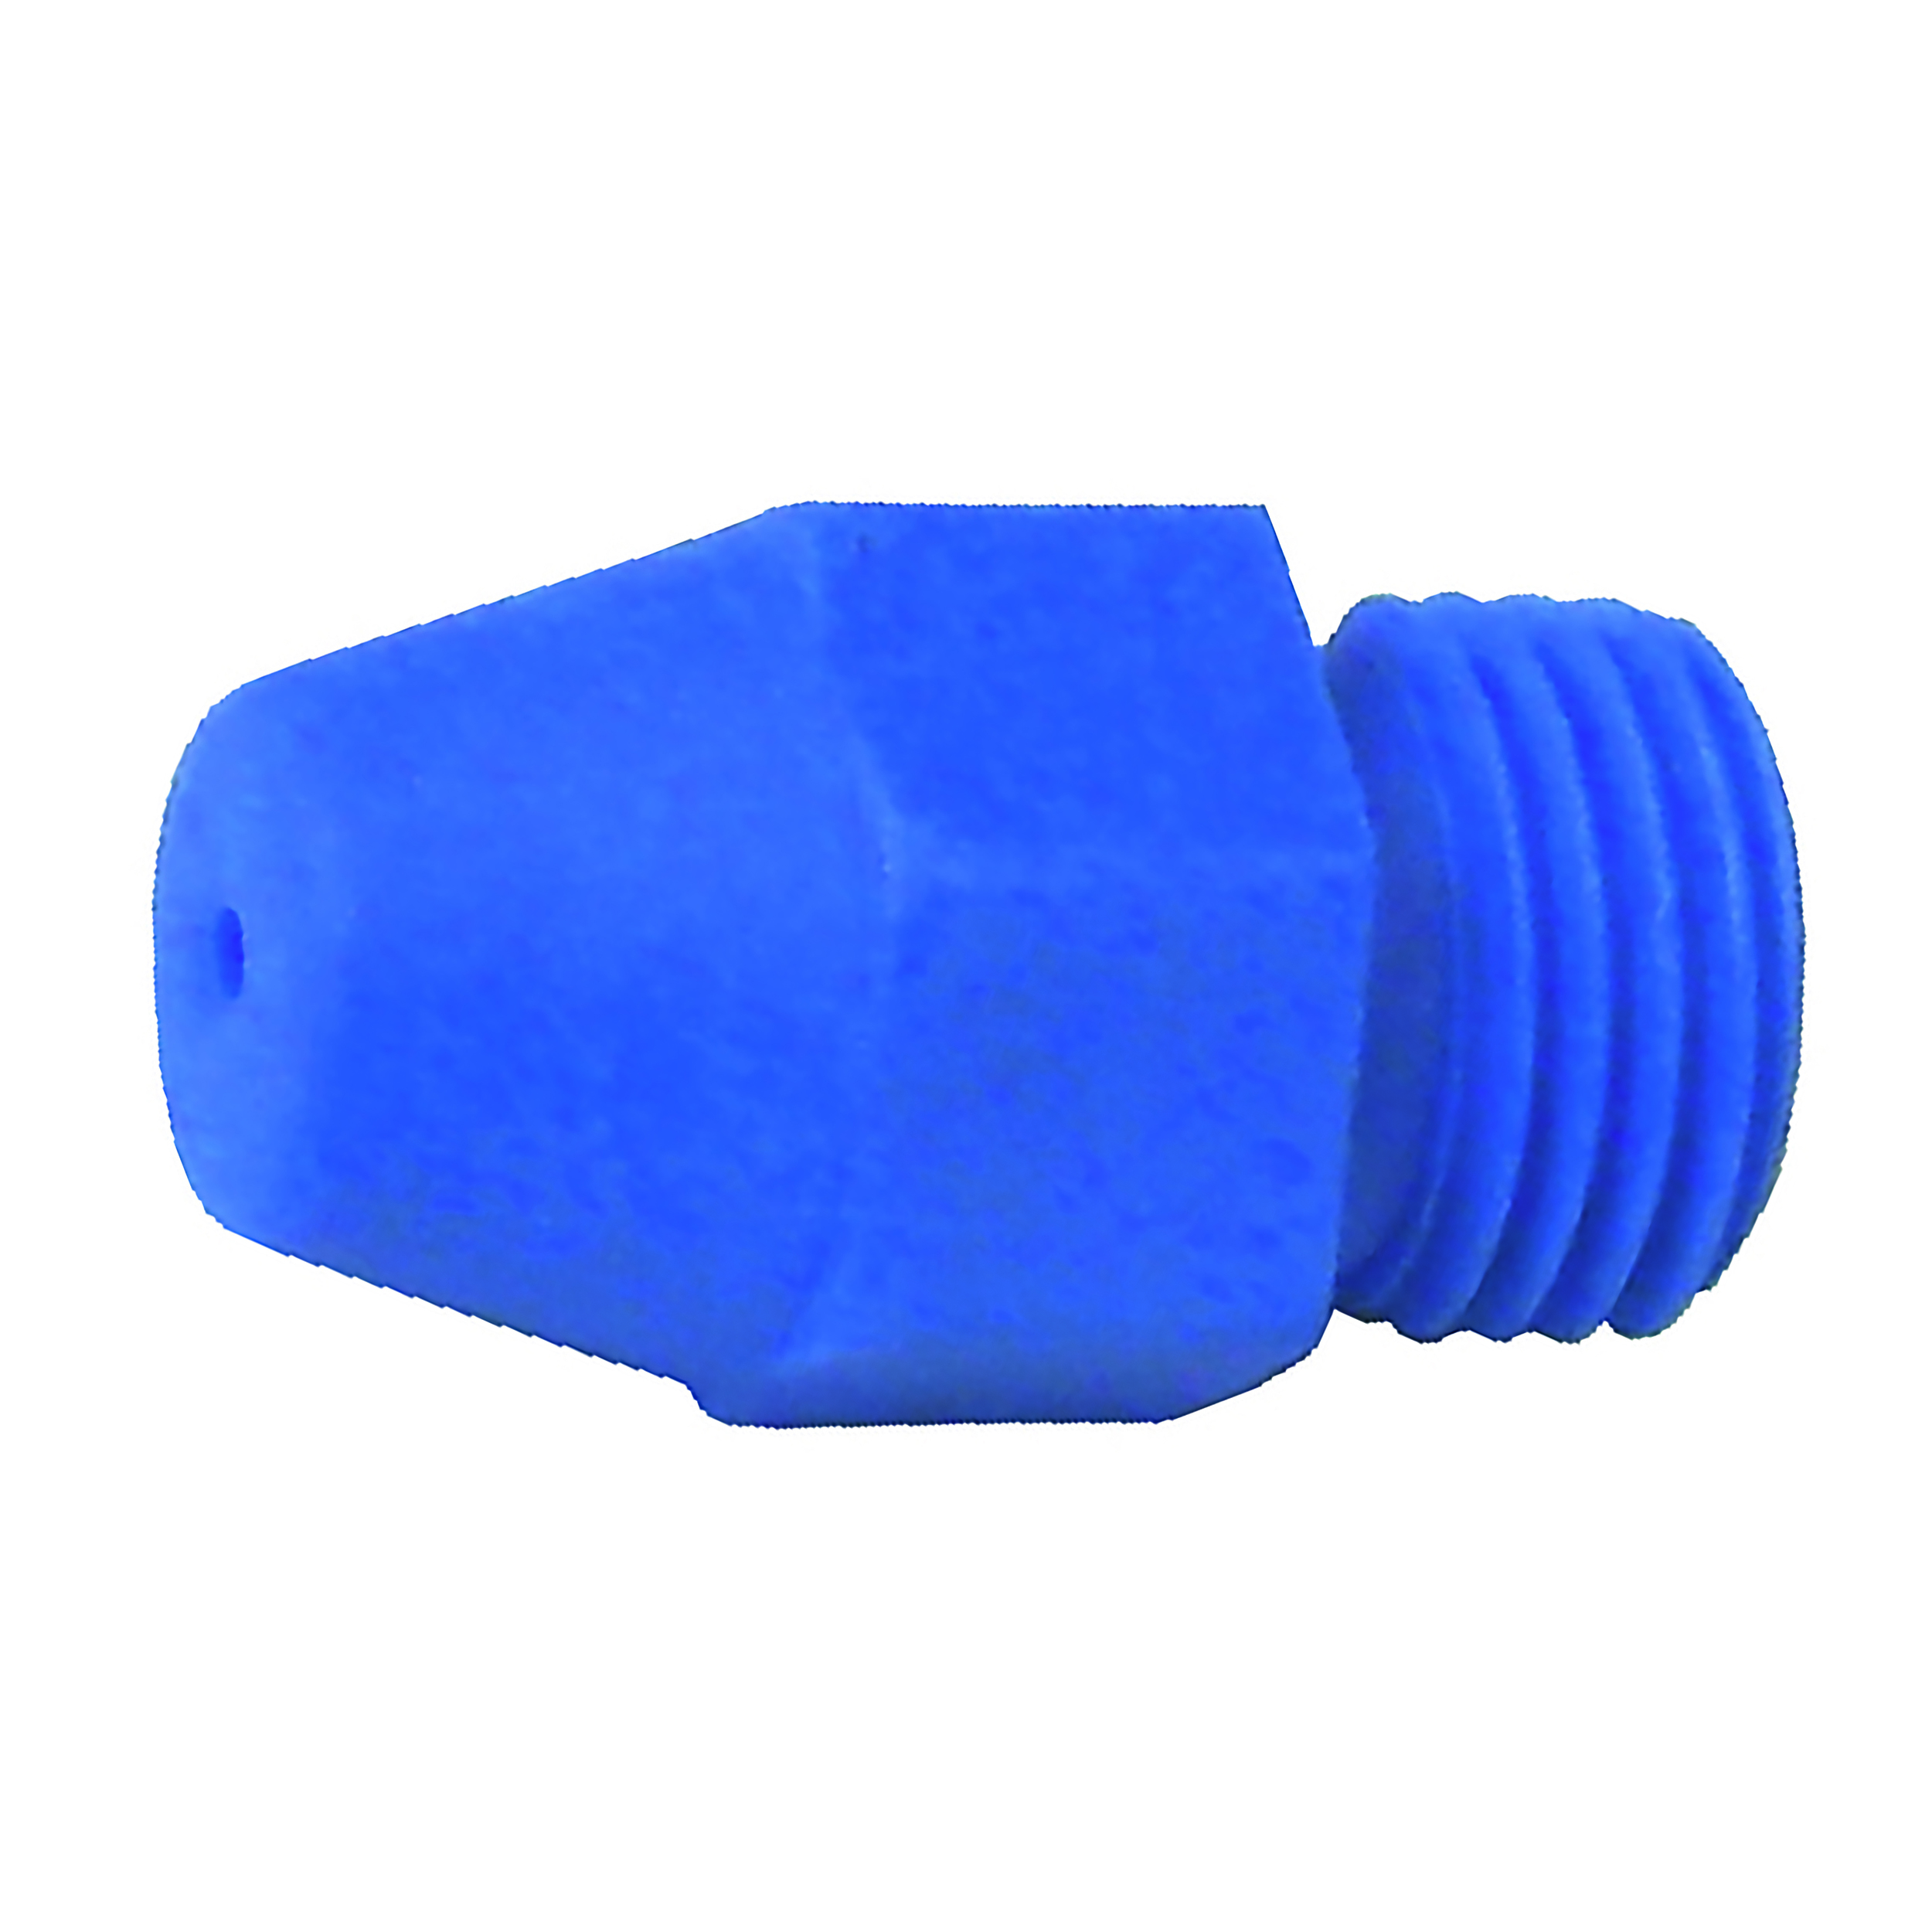 Standarddüse, Kunststoff, blau, zentrische Bohrung Ø1,5 mm, Anschluss: M12 × 1,25, über 90 dB(A) bei einem Druck > 4 bar/58 bar